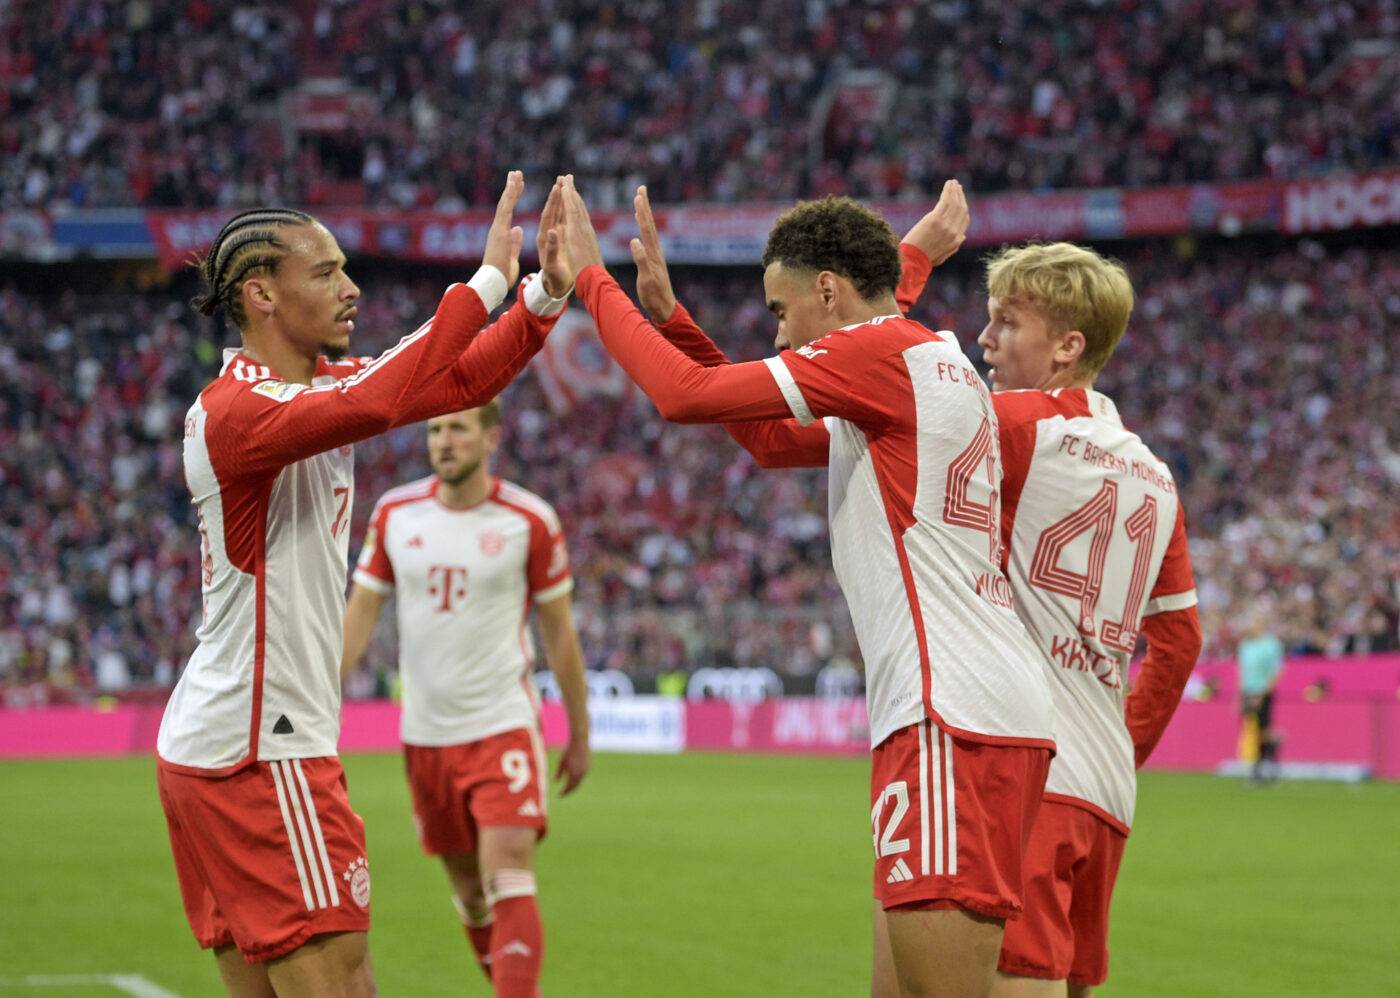 Le Bayern s'offre une victoire épique contre Darmstadt